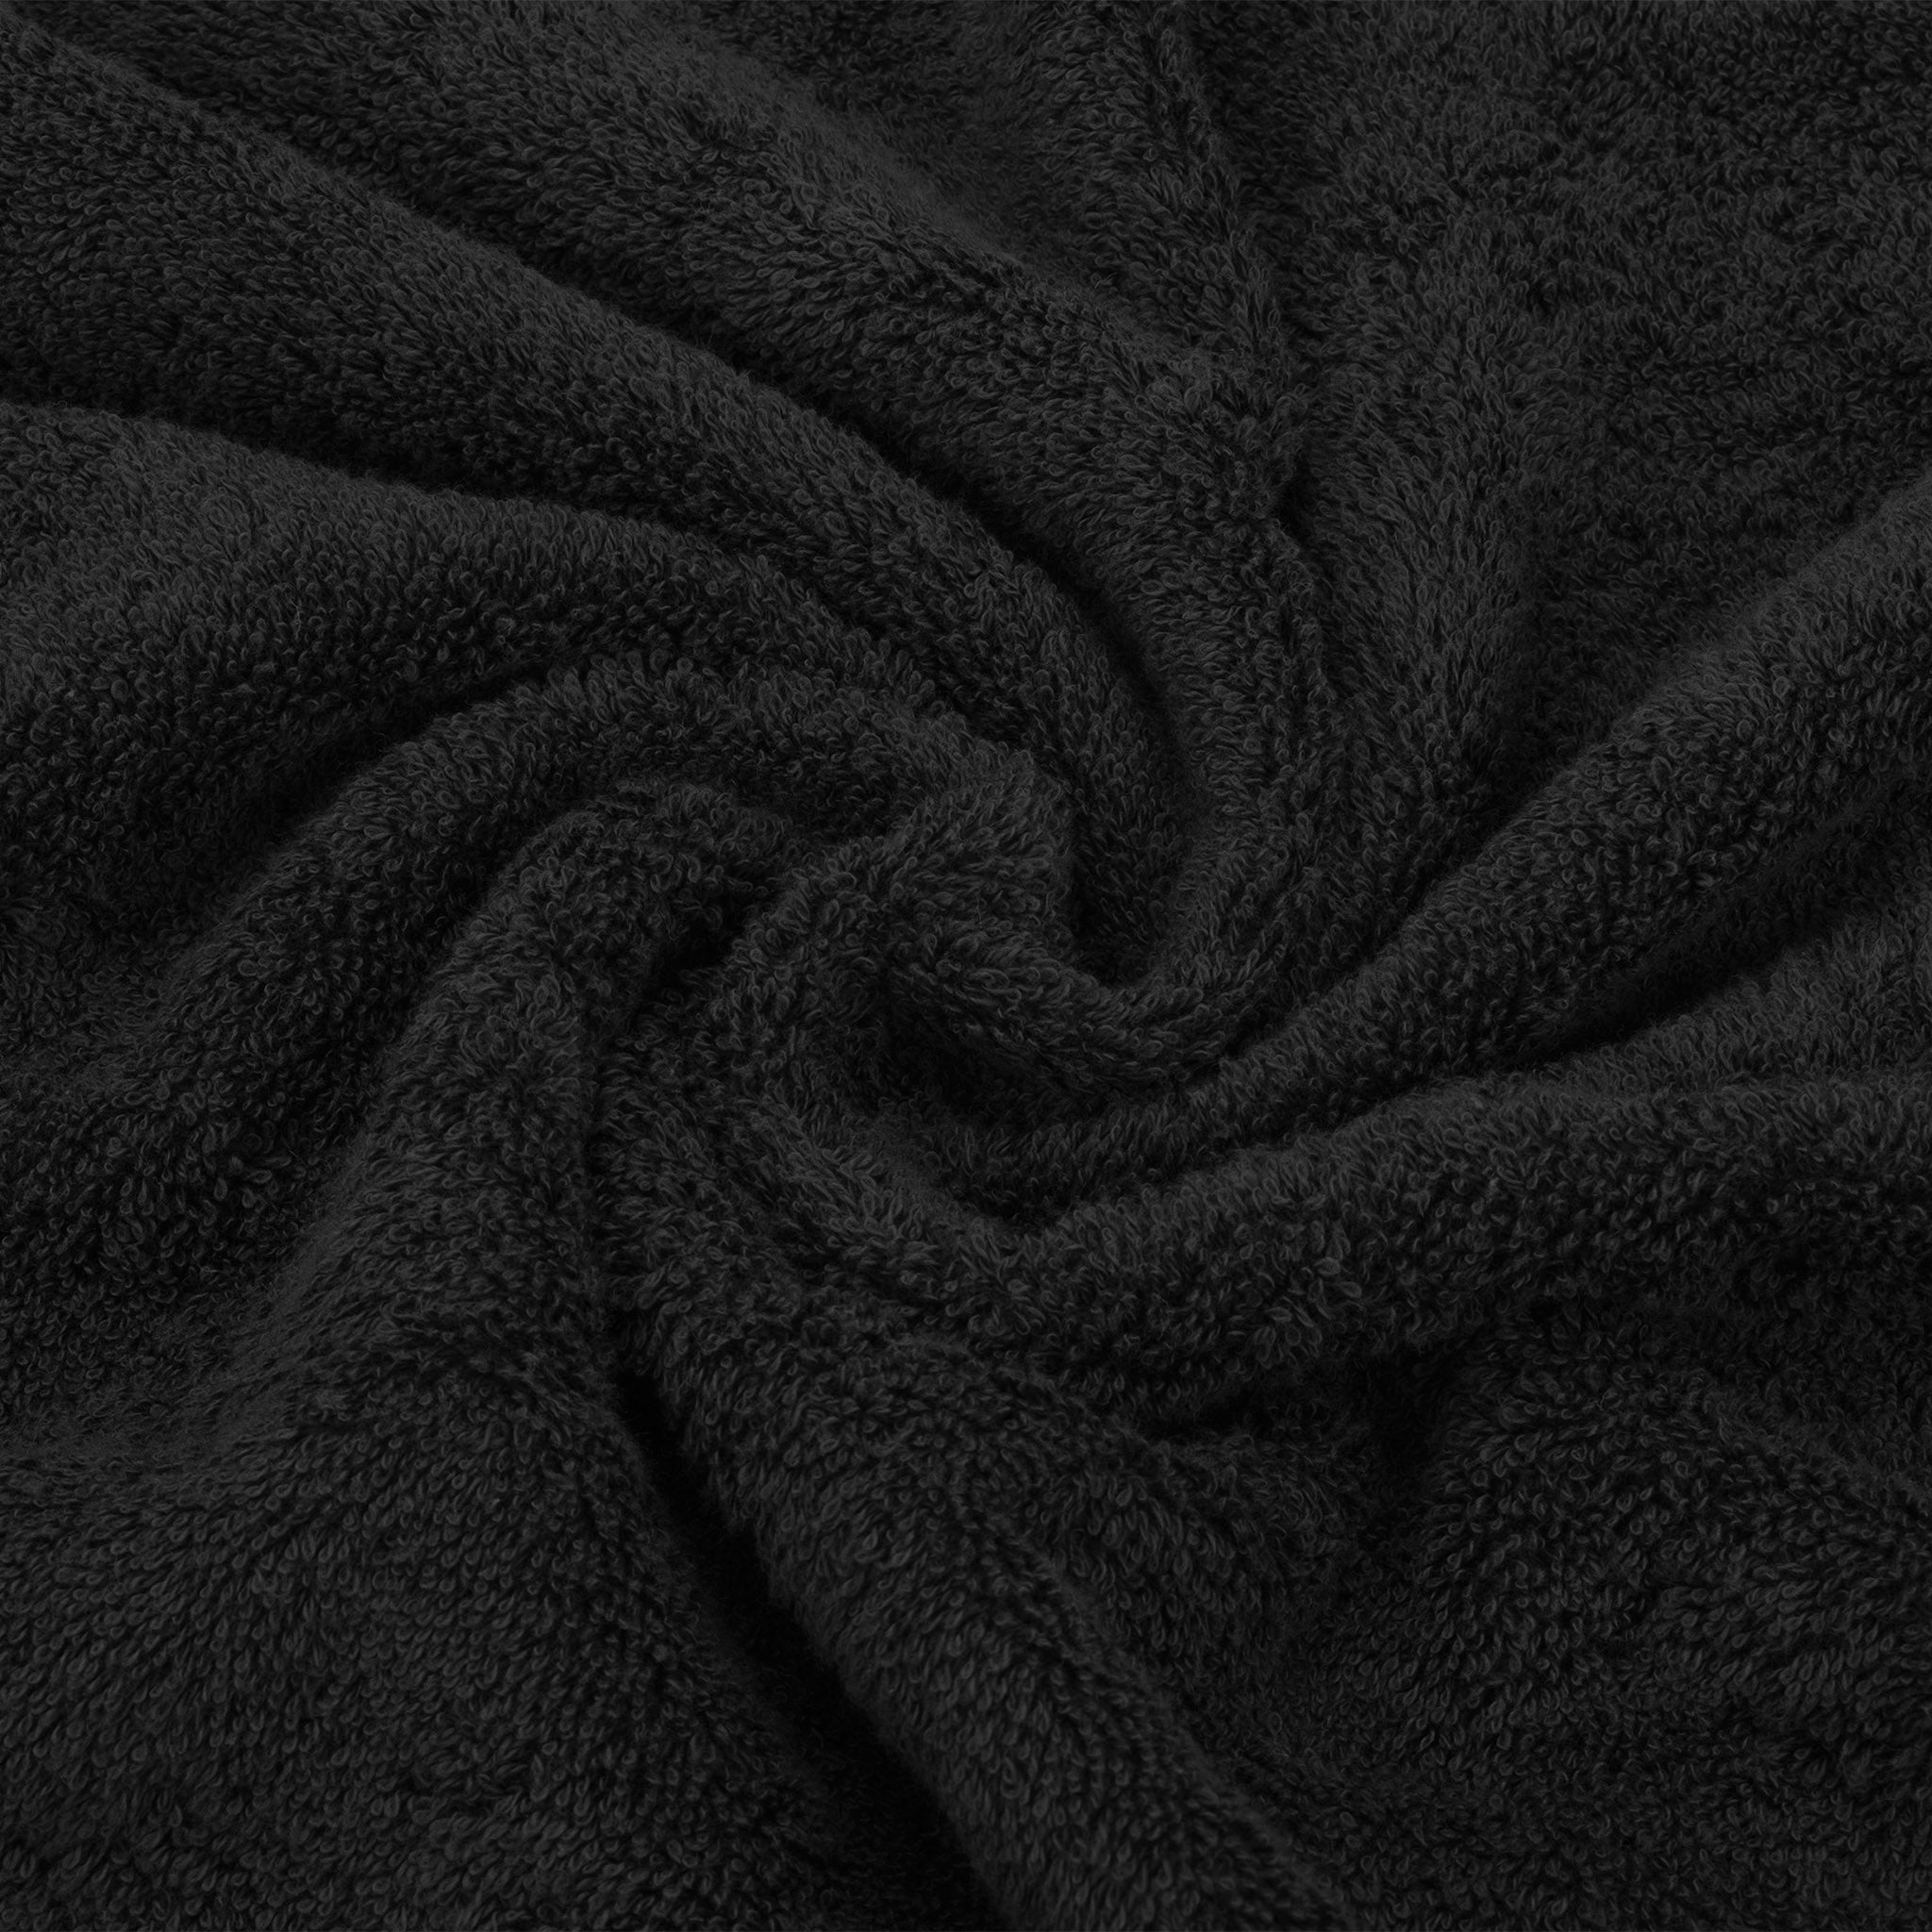 American Soft Linen 100% Turkish Cotton 6 Piece Towel Set Wholesale black-7